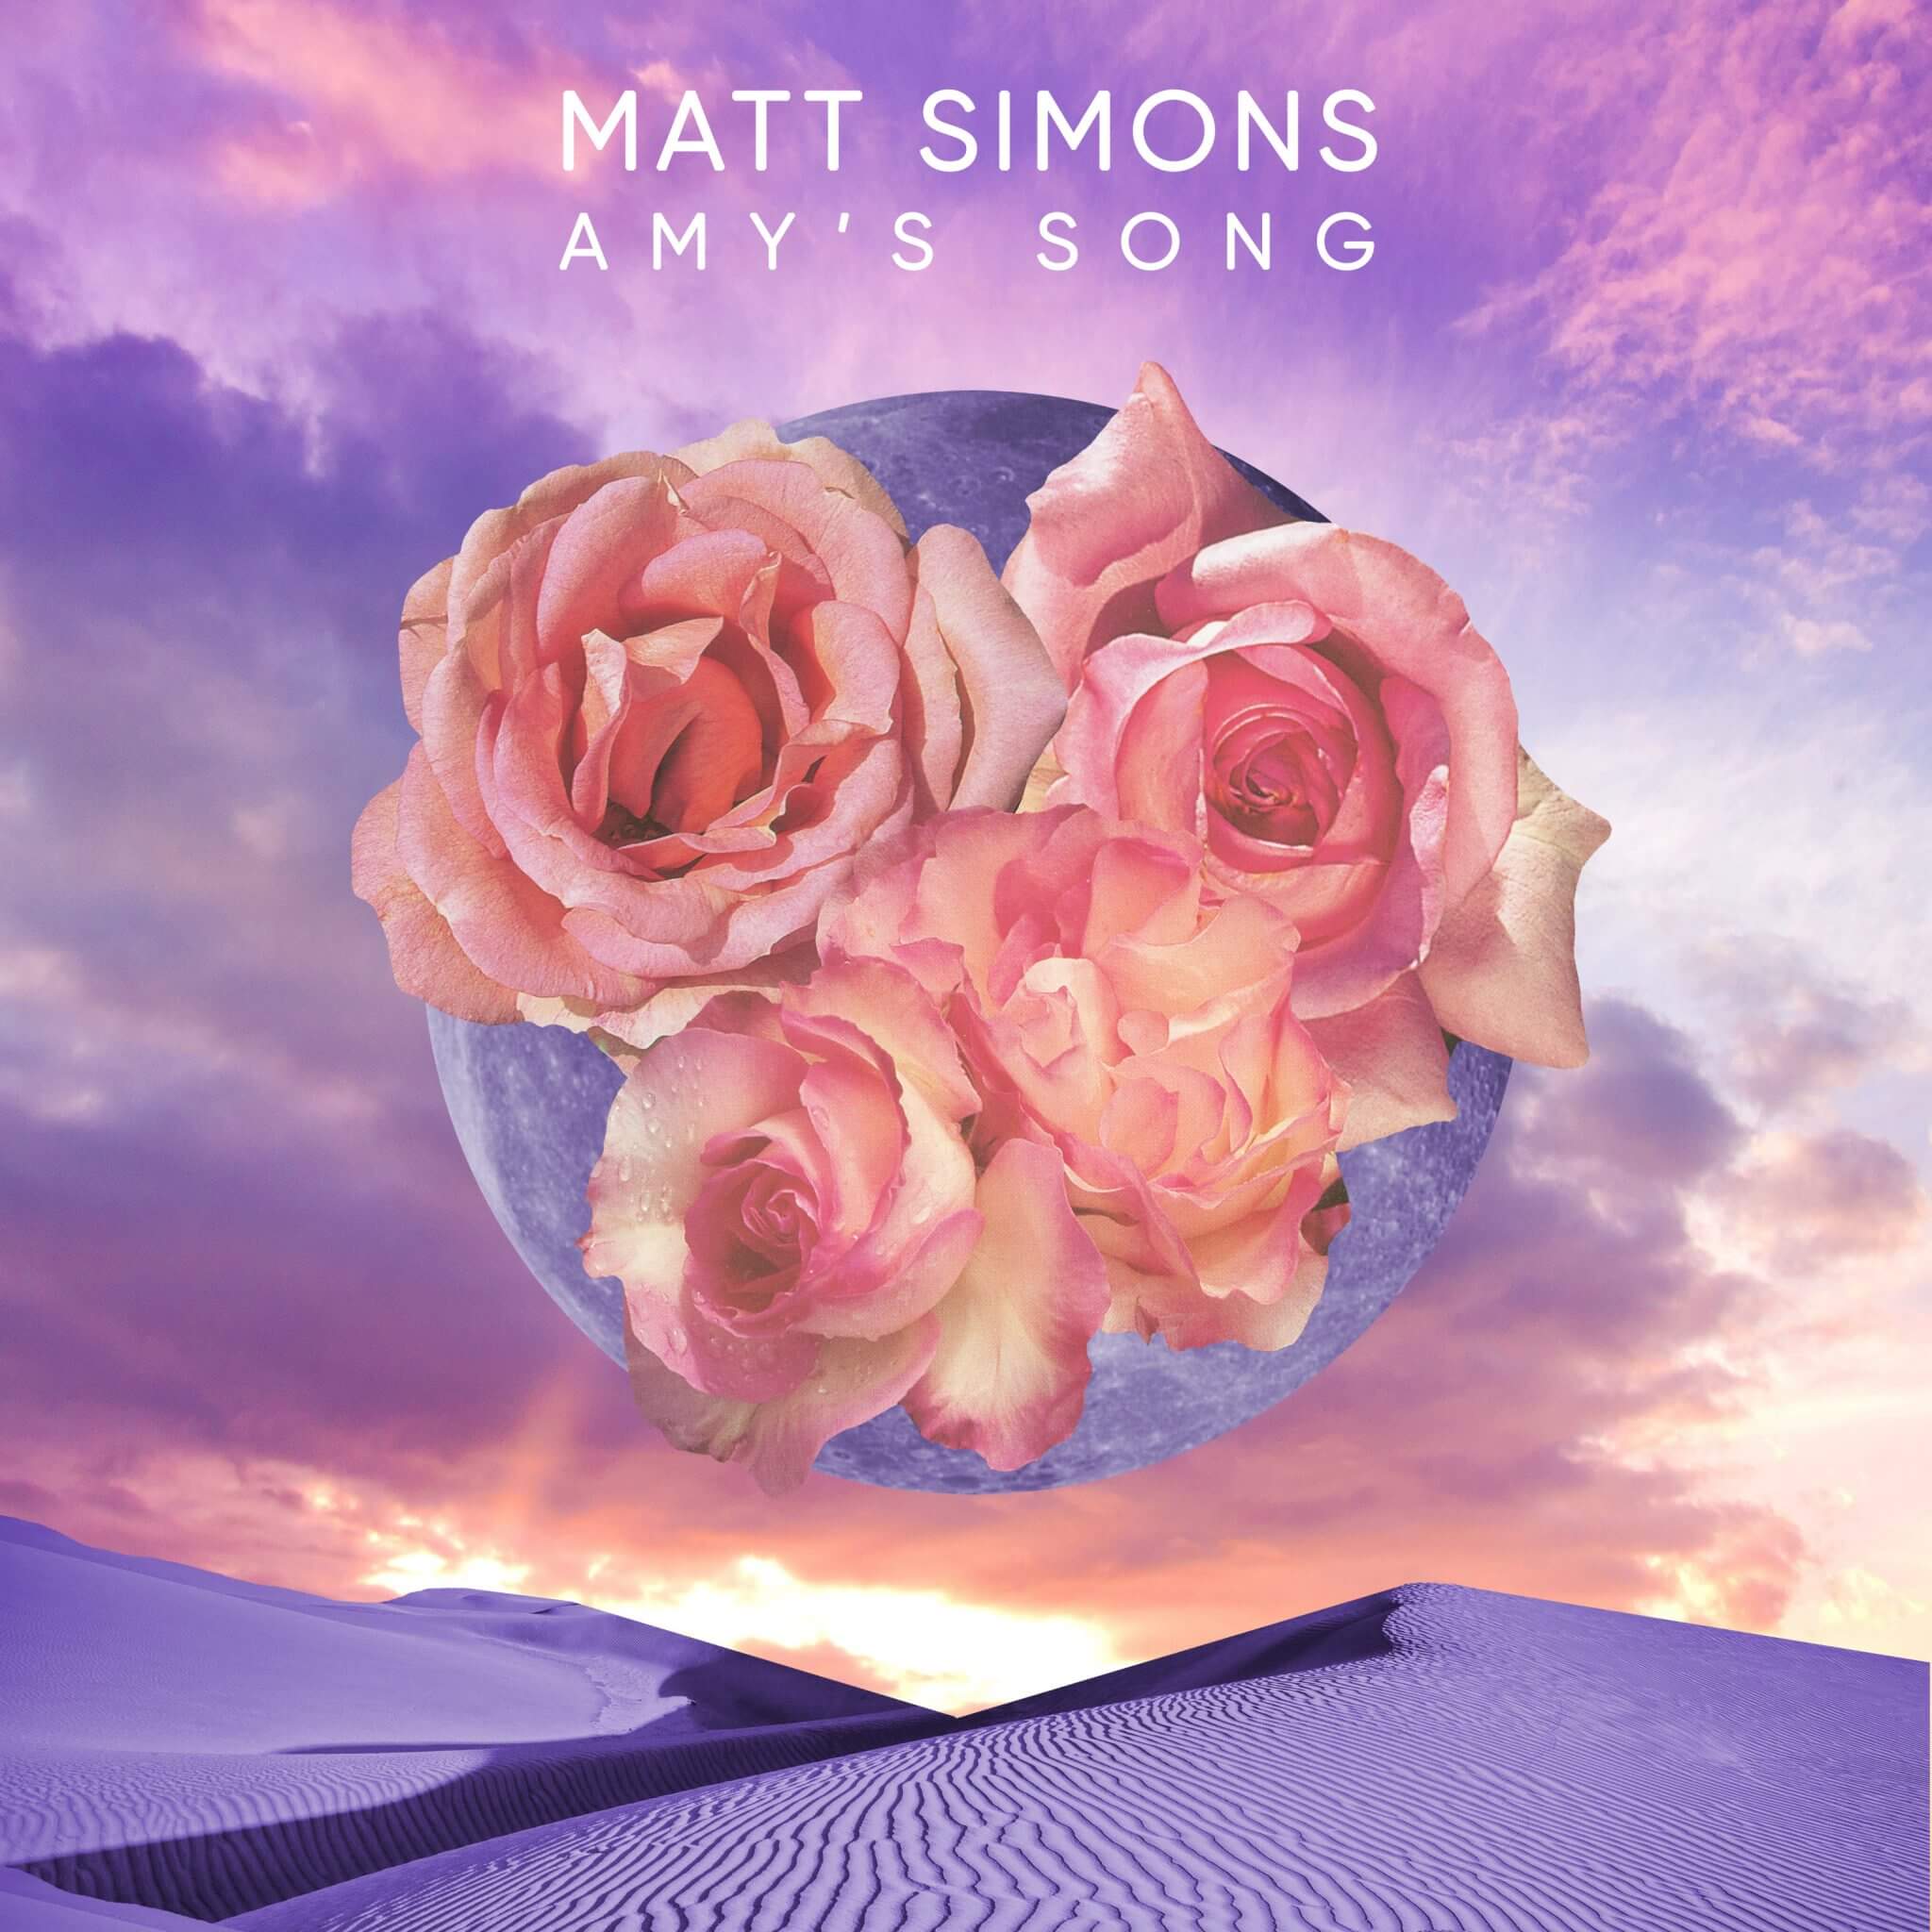 Matt Simons presenta "Amy's Song" e lancia un messaggio d'amore universale - Amy s Song single - Gay.it